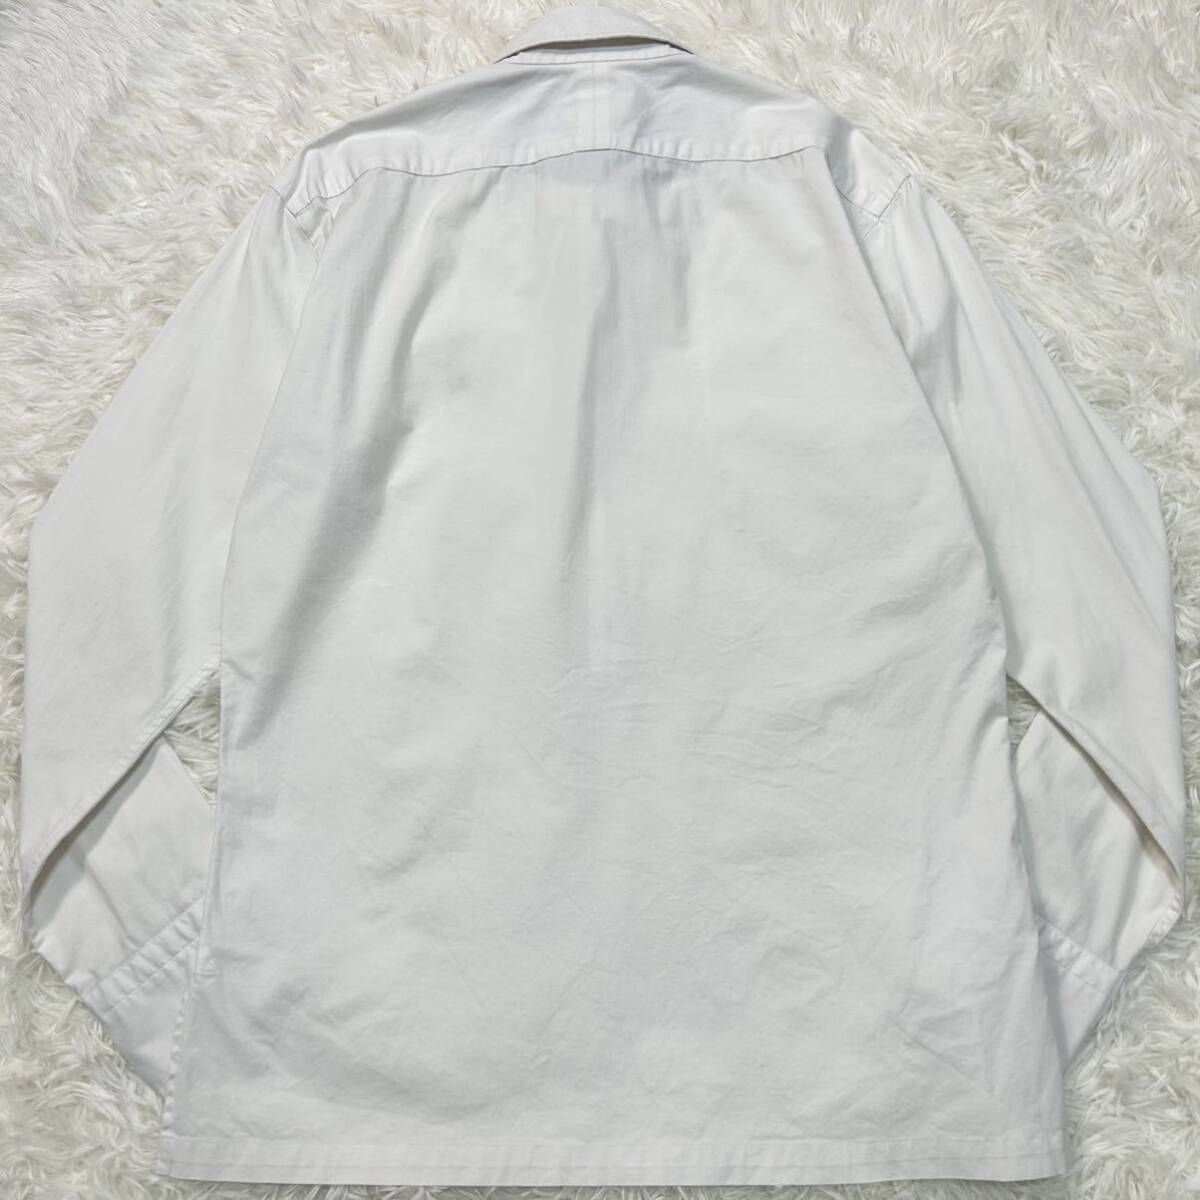  превосходный товар / редкость * Burberry Black Label шланг вышивка noba проверка Skipper рубашка с длинным рукавом тянуть over белый 2(M) BURBERRY BLACK LABEL